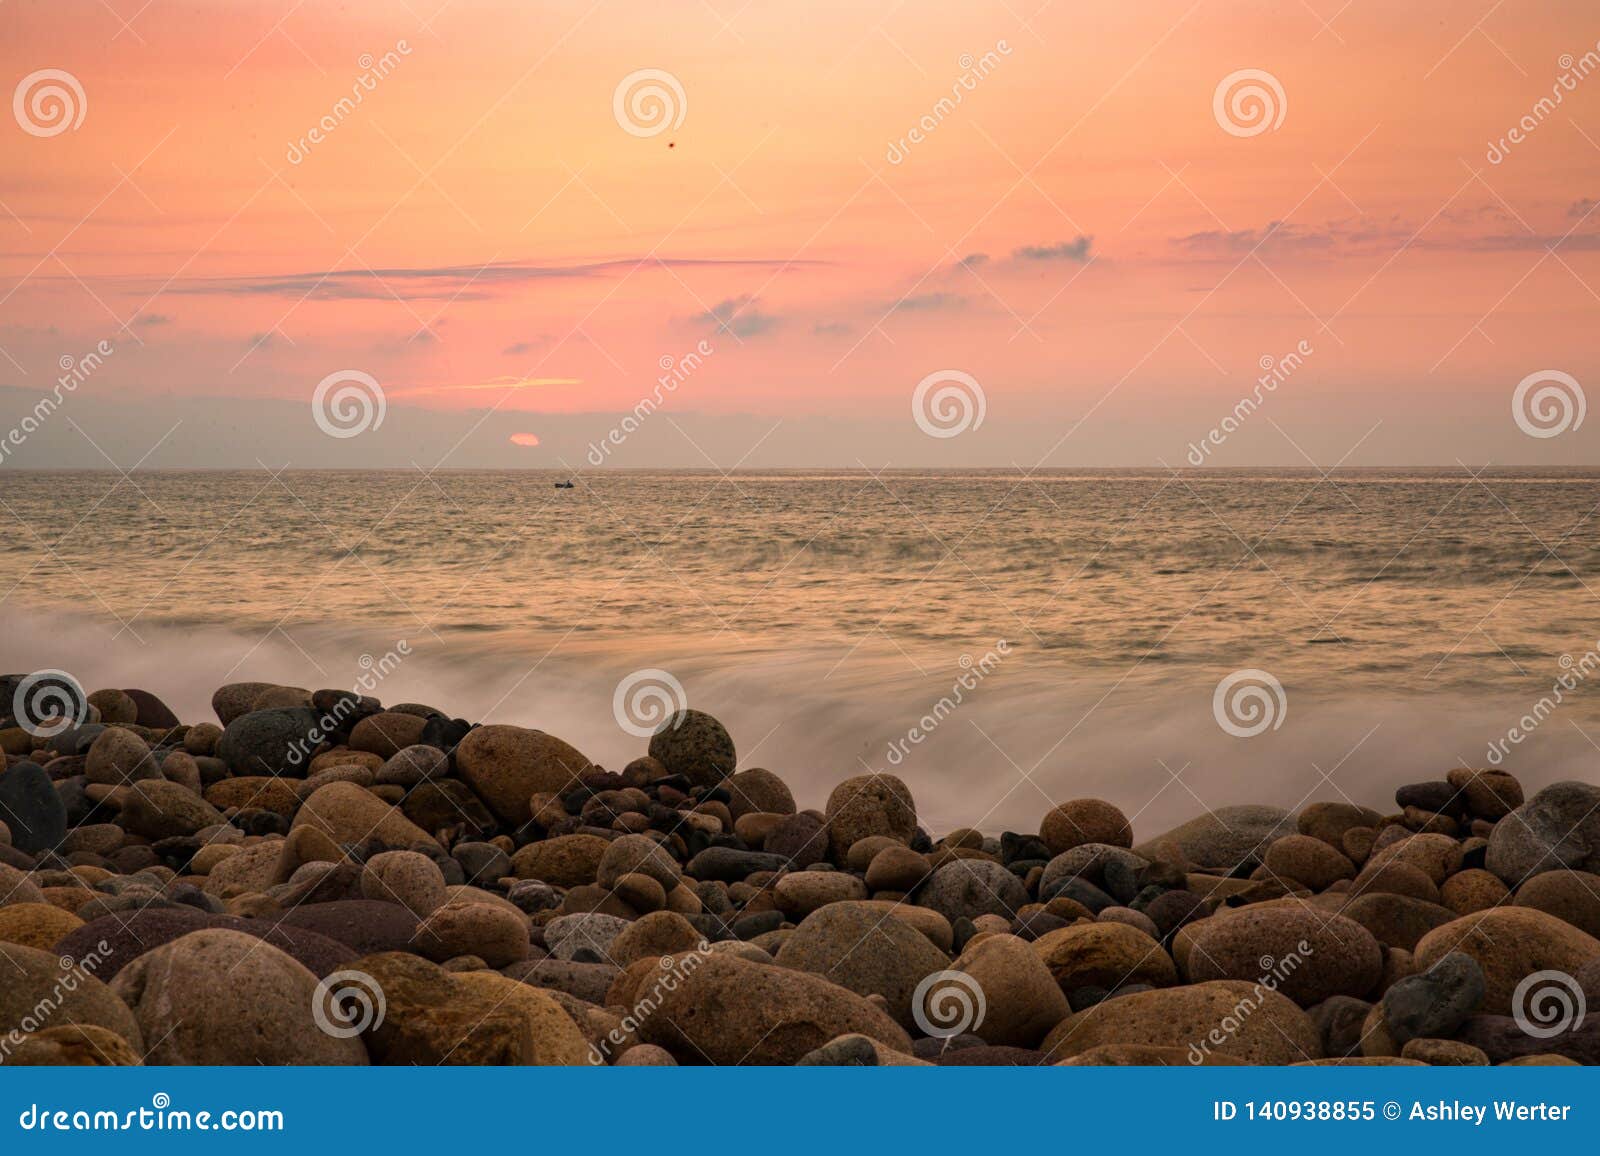 sunset on rosita beach in centro